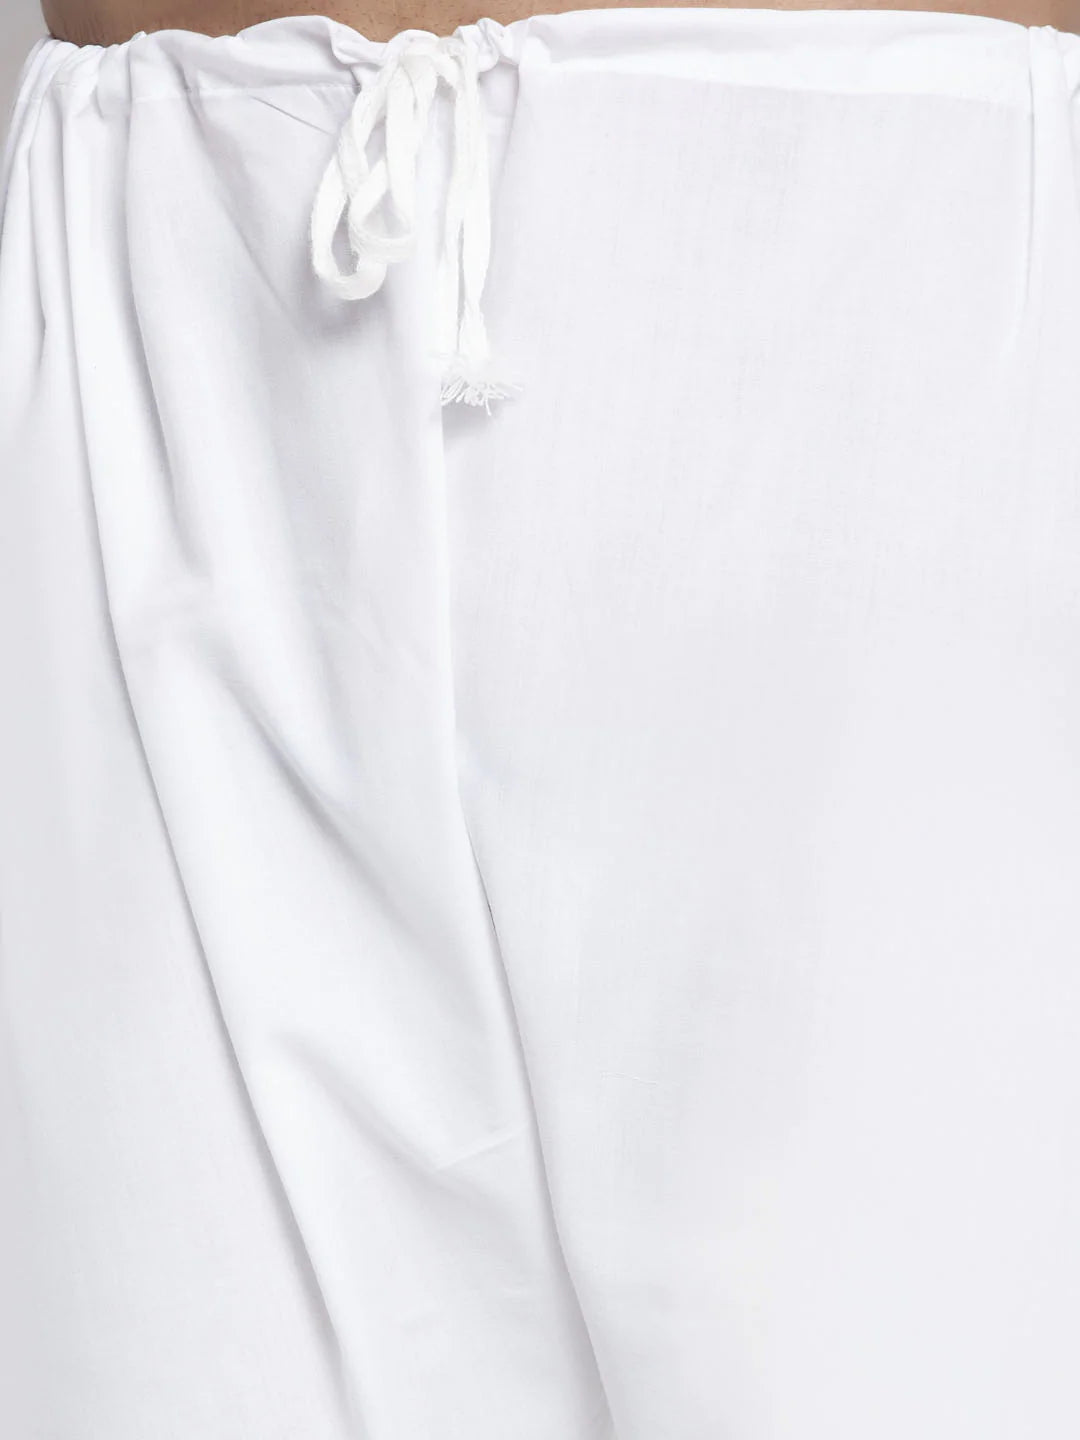 Jompers Men Bronze & White Woven Design Kurta with Pyjamas ( JOKP 637 Bronze )